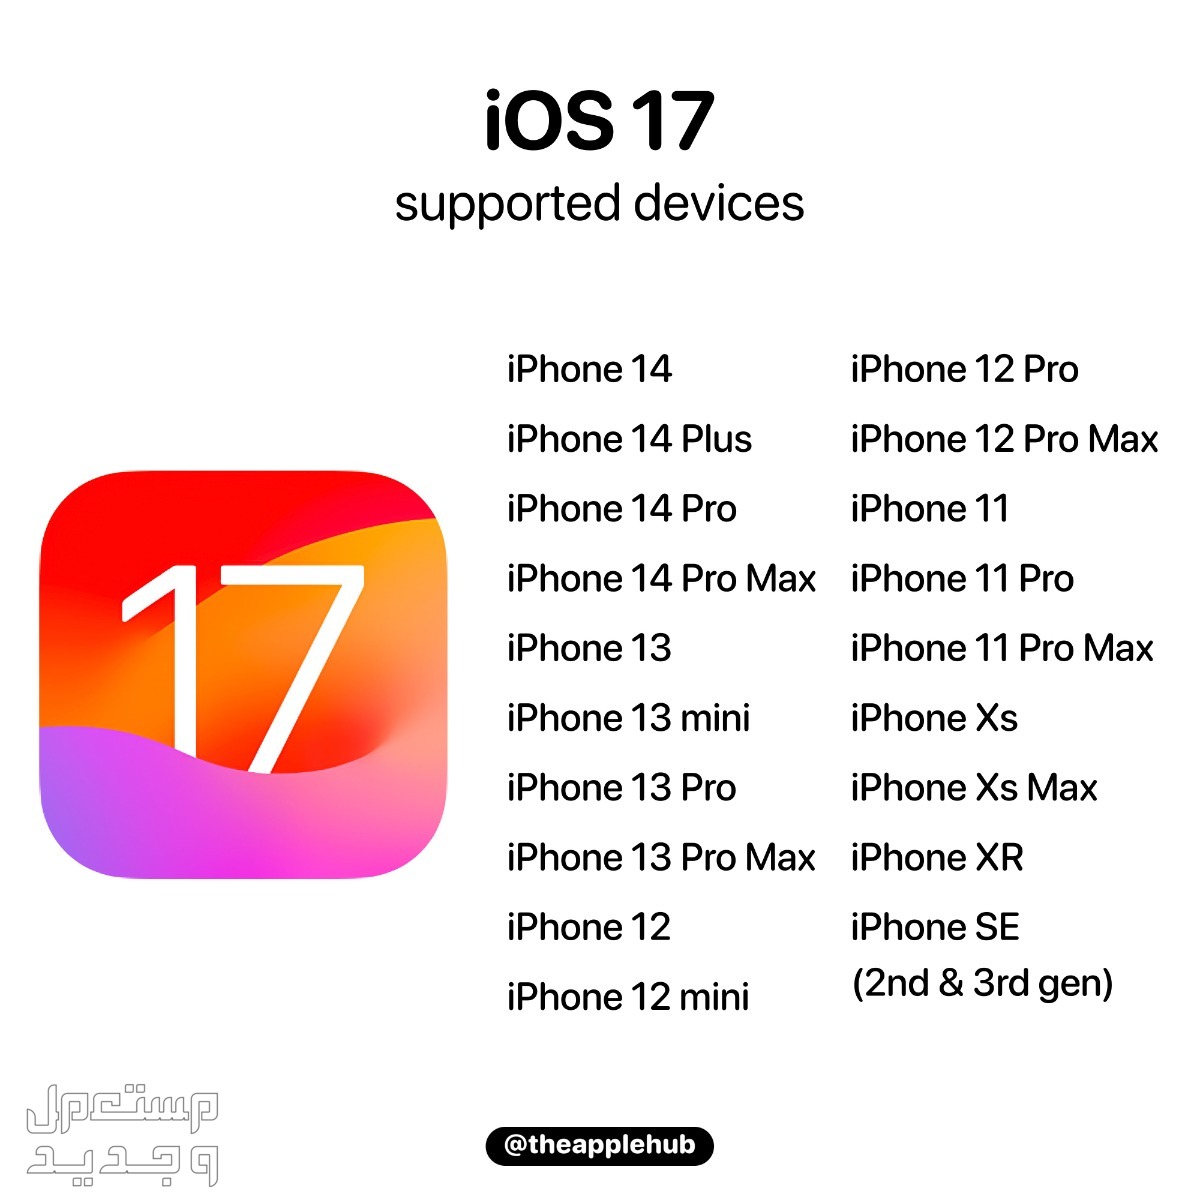 نظام iOS 17 لهواتف ايفون بمميزات جديدة تعرف عليها في السعودية